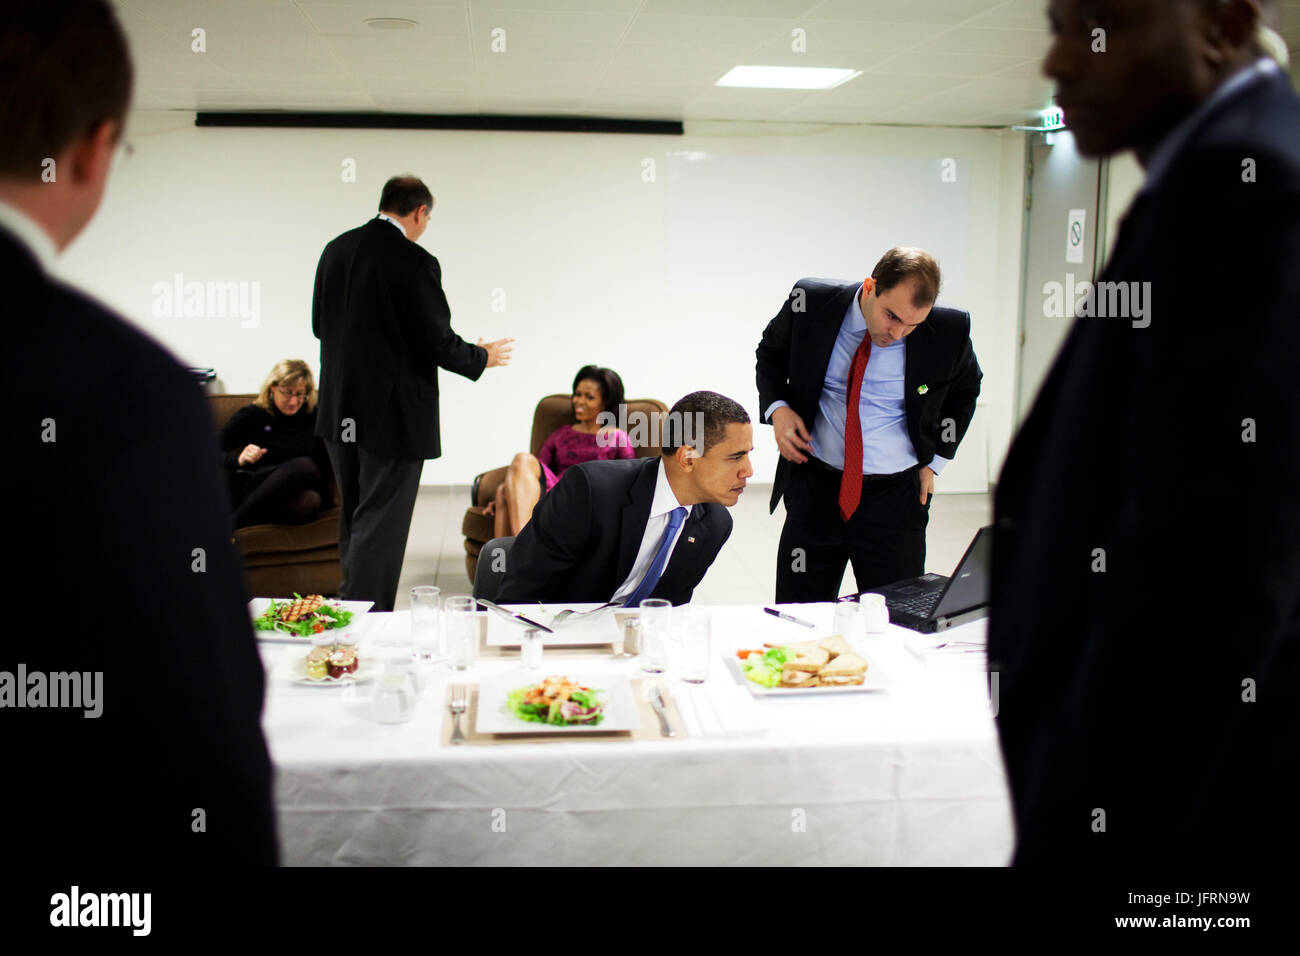 Le président Barack Obama commentaires son discours au parlement turc en charge de Ben Rhodes tout en mangeant le déjeuner le 3 avril 2009, à Strasbourg, en France. Photo Officiel de la Maison Blanche/Pete Souza Banque D'Images